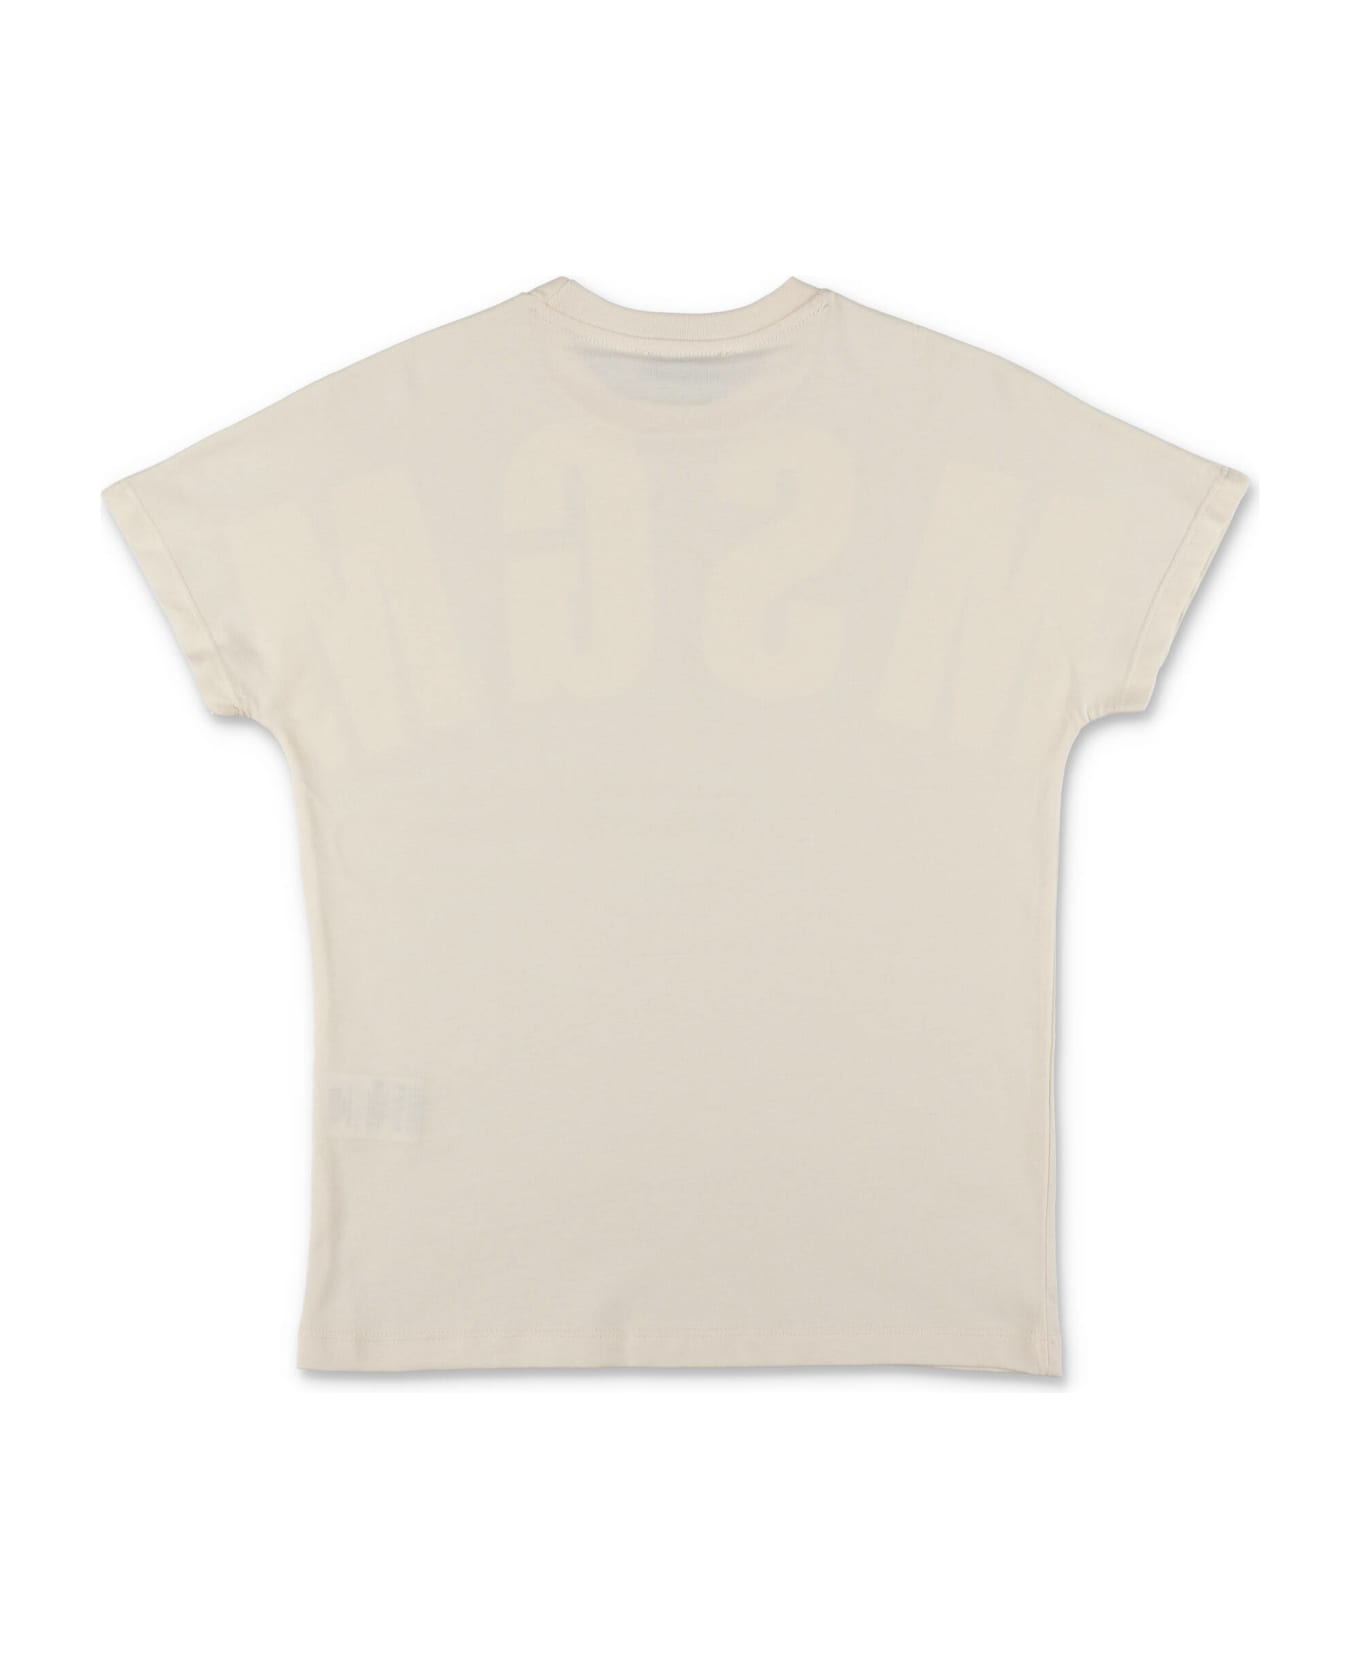 MSGM T-shirt Crema In Jersey Di Cotone Bambino - Crema